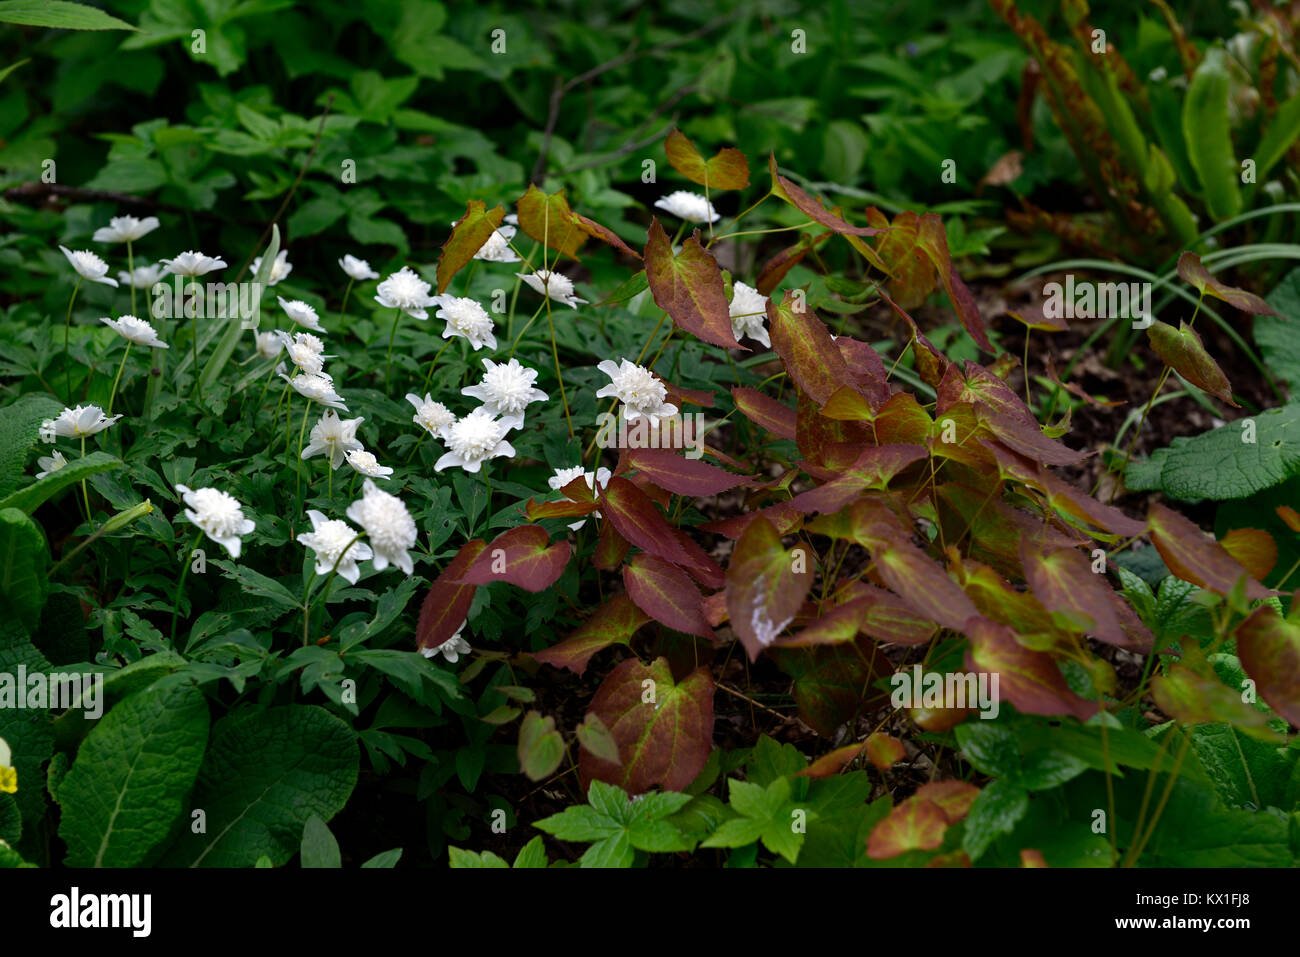 anemone nemorosa vestal,white double flowers,epimedium,marbled,mottled,foliage,leaves,flowers,flower,flowering,garden,spring,wood,woodland,shad Stock Photo